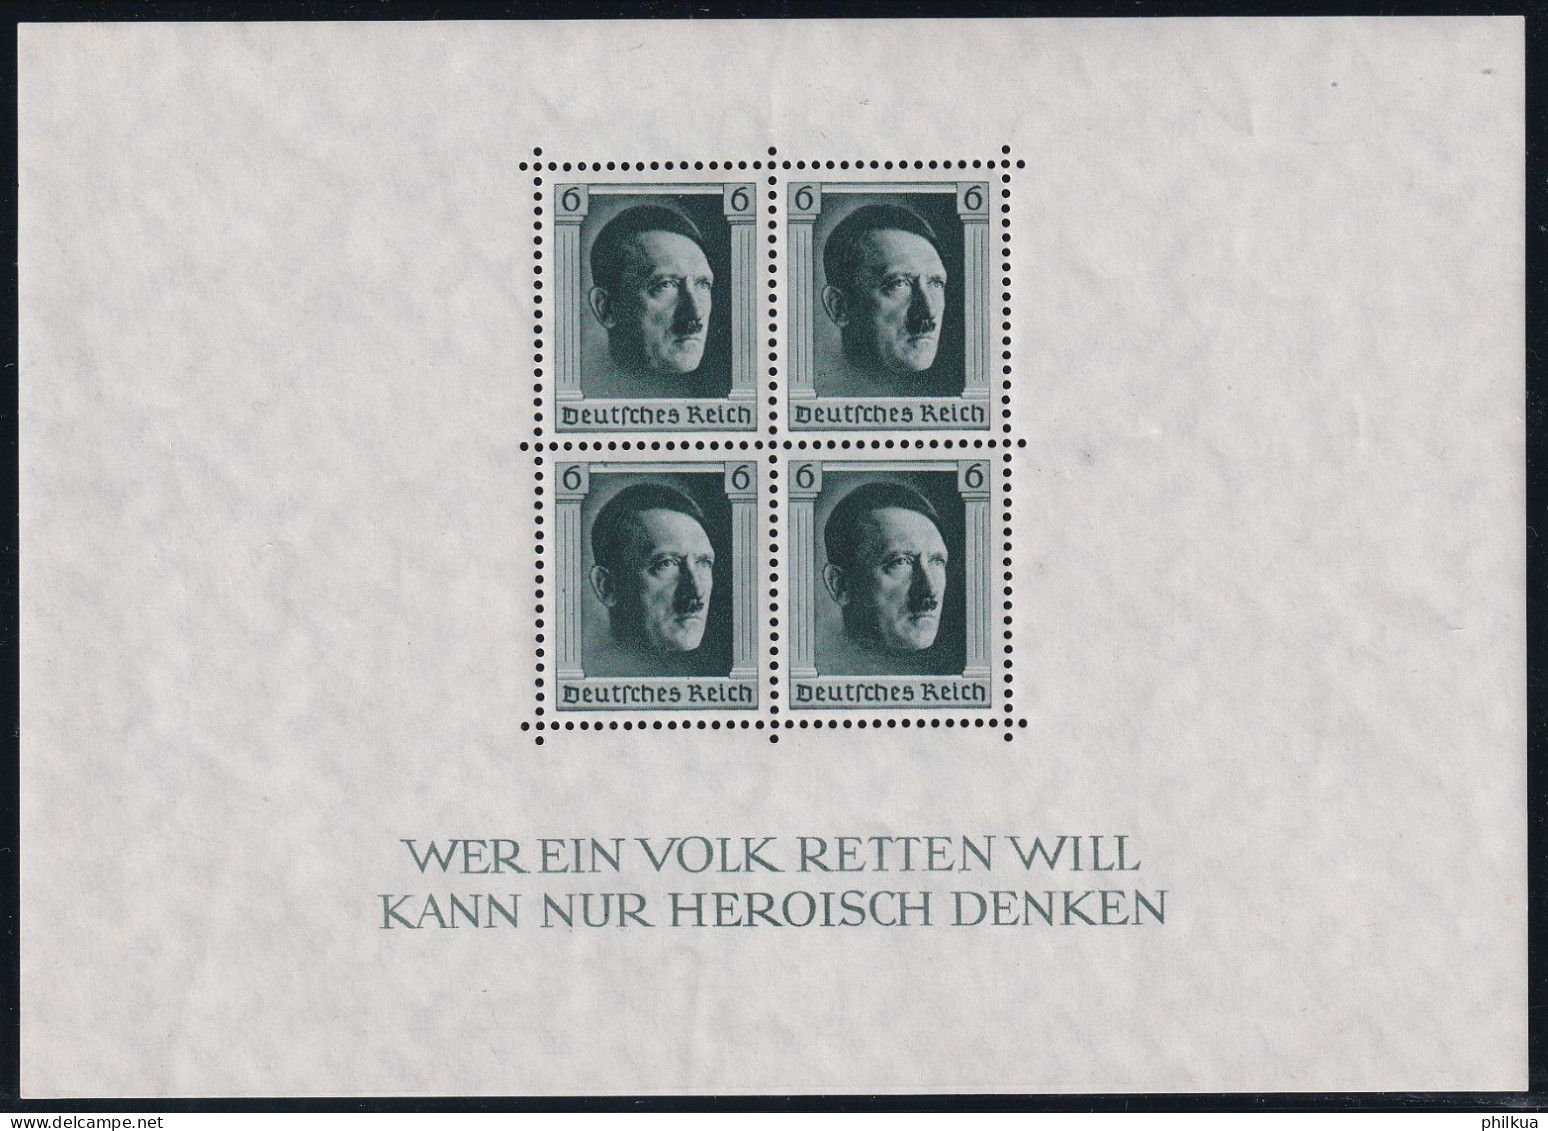 MiNr. (646) Block 7 Deutsches Reich 1937, 5. April. Blockausgabe: 48. Geburtstag Von Adolf Hitler - Postfrisch/**/MNH - Blocks & Sheetlets